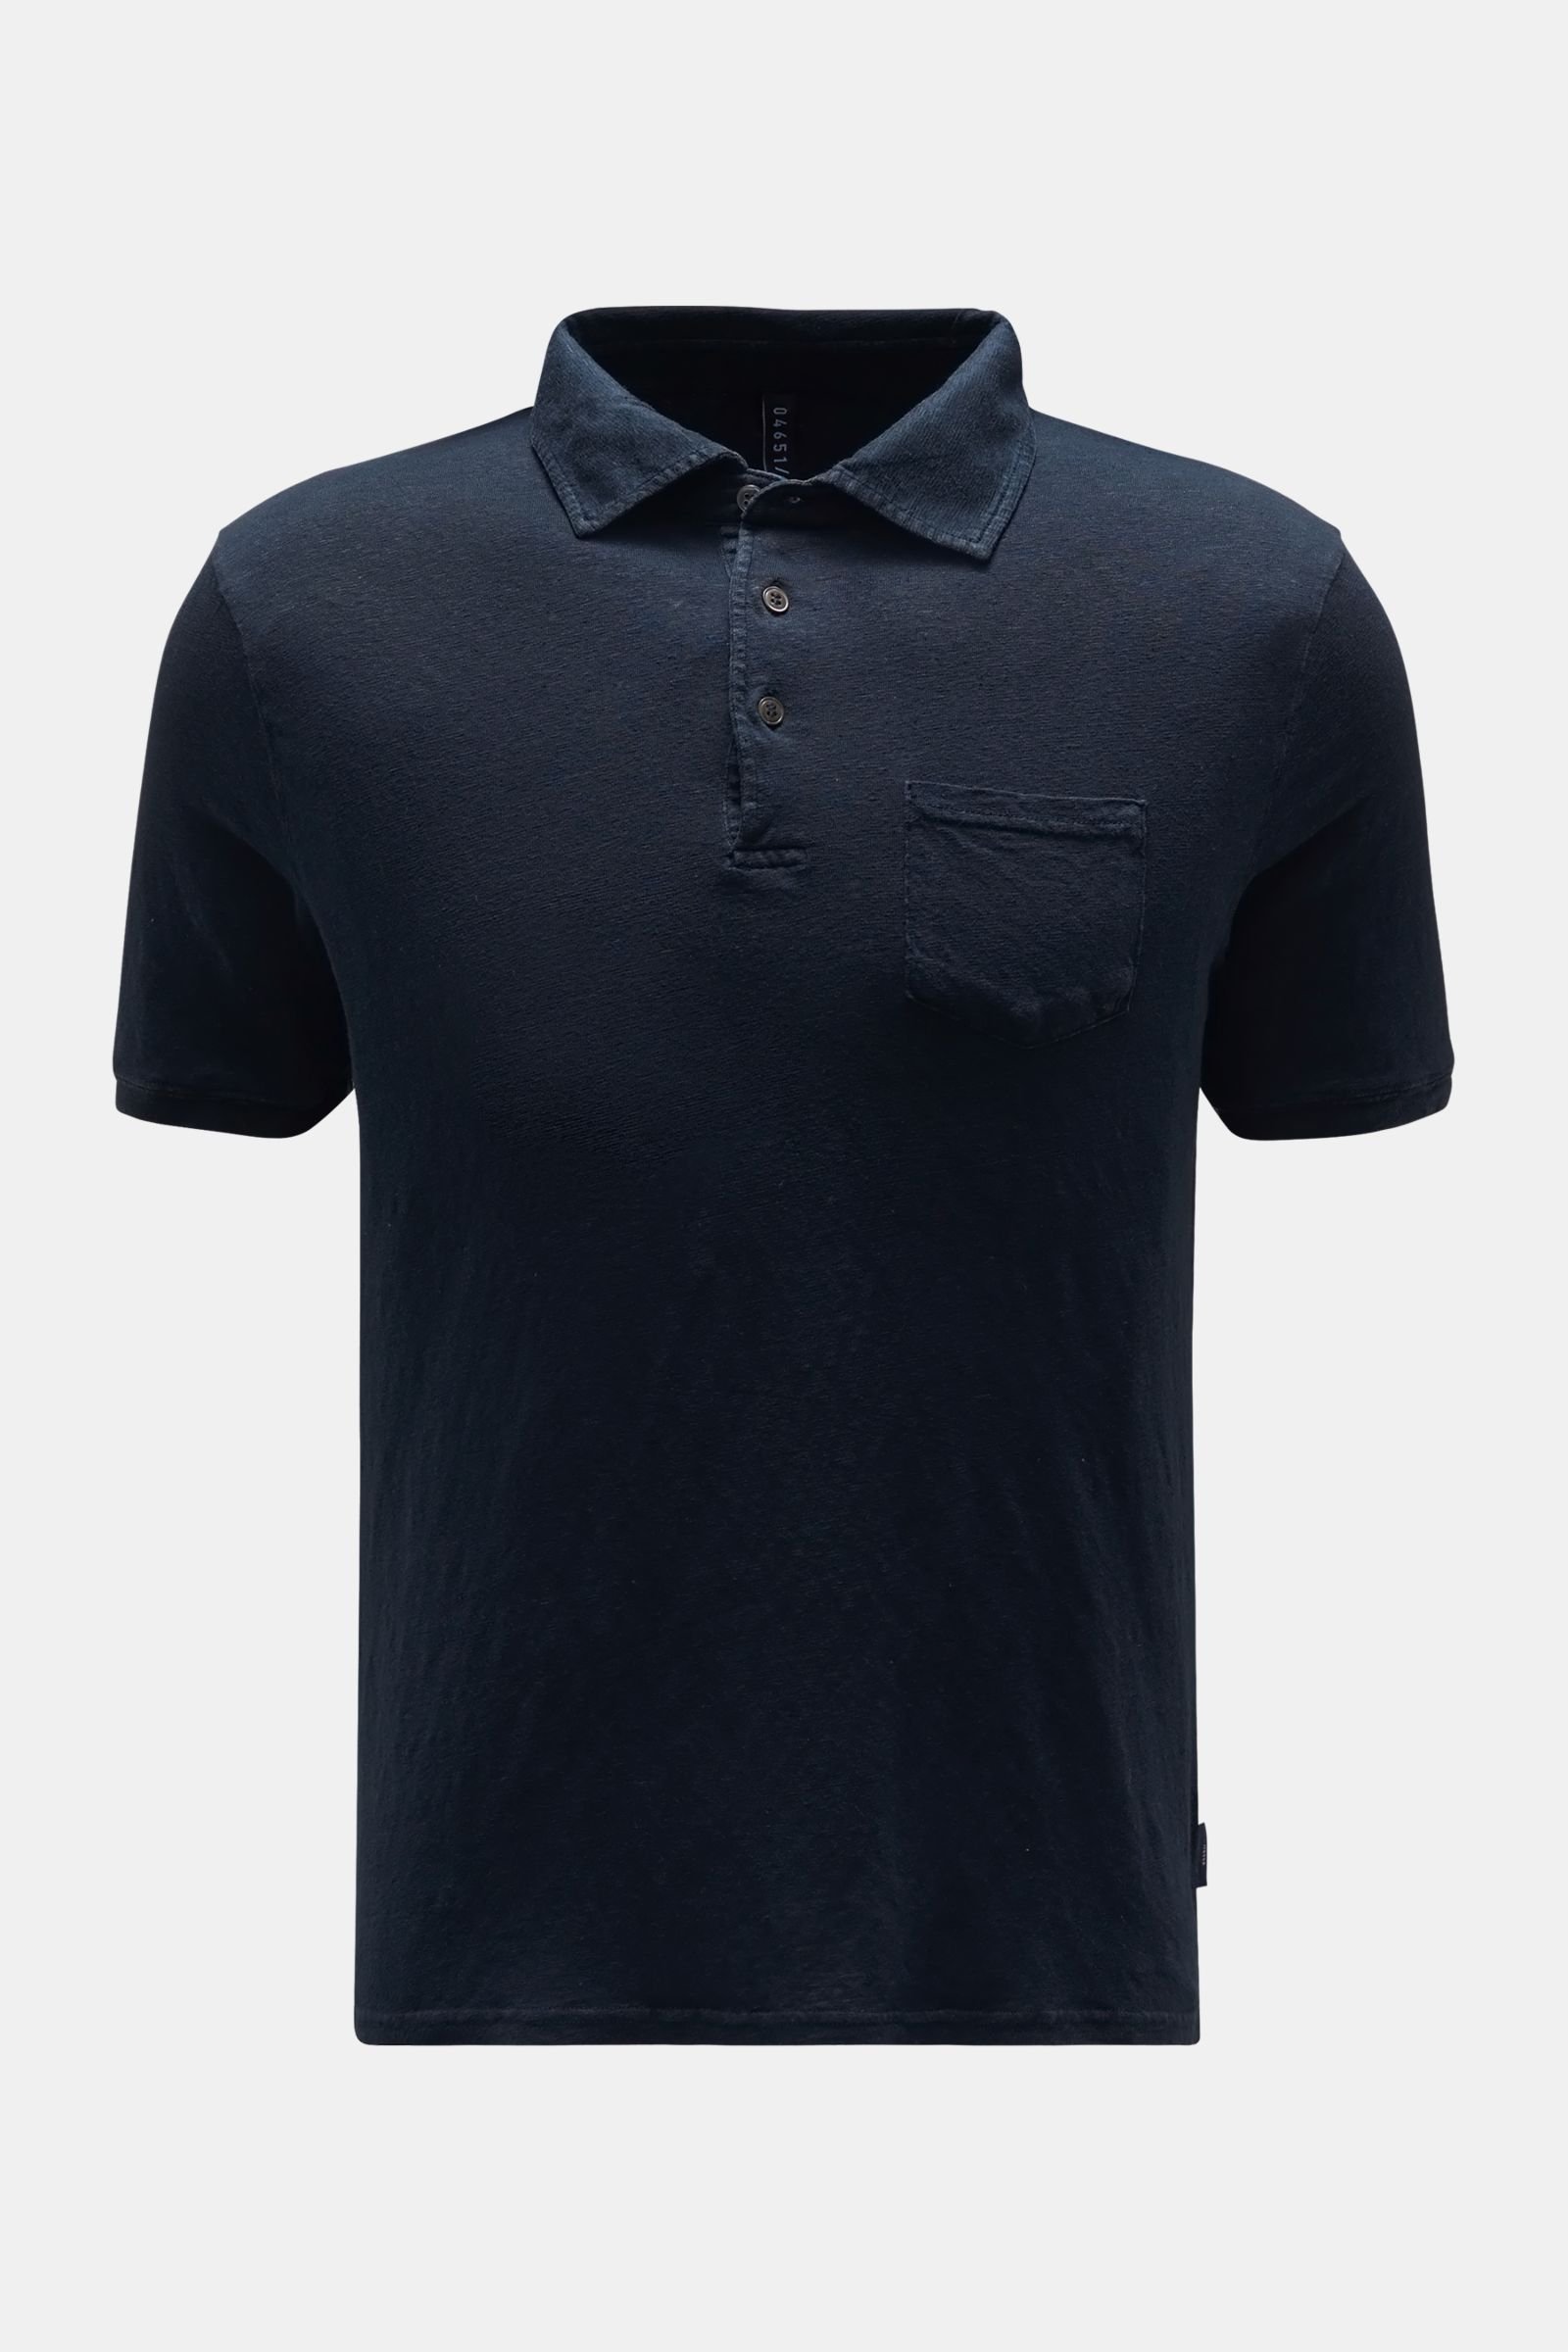 Linen polo shirt navy